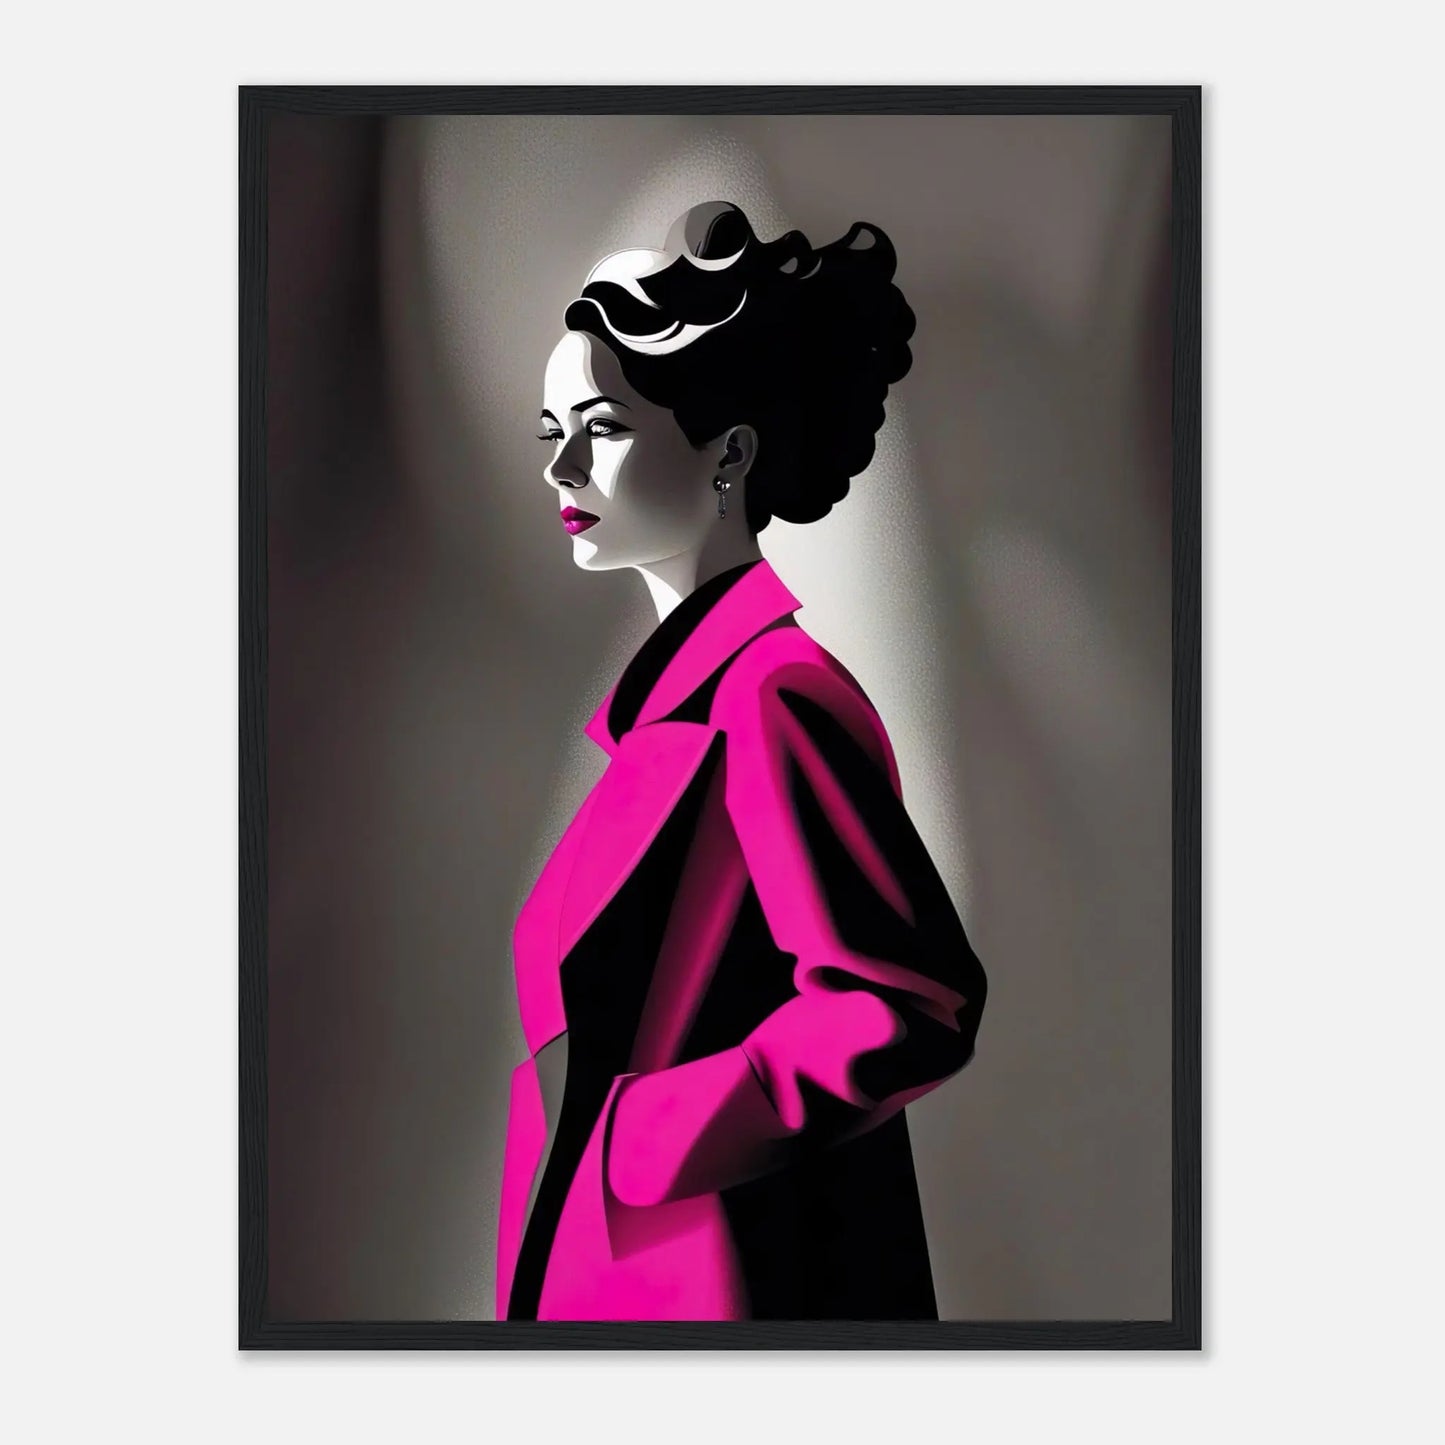 Gerahmtes Premium-Poster - Frau im rosa Mantel - Schwarz-Weiß, KI-Kunst - RolConArt, Schwarz-Weiß mit Akzentfarben, 45x60-cm-18x24-Schwarzer-Rahmen